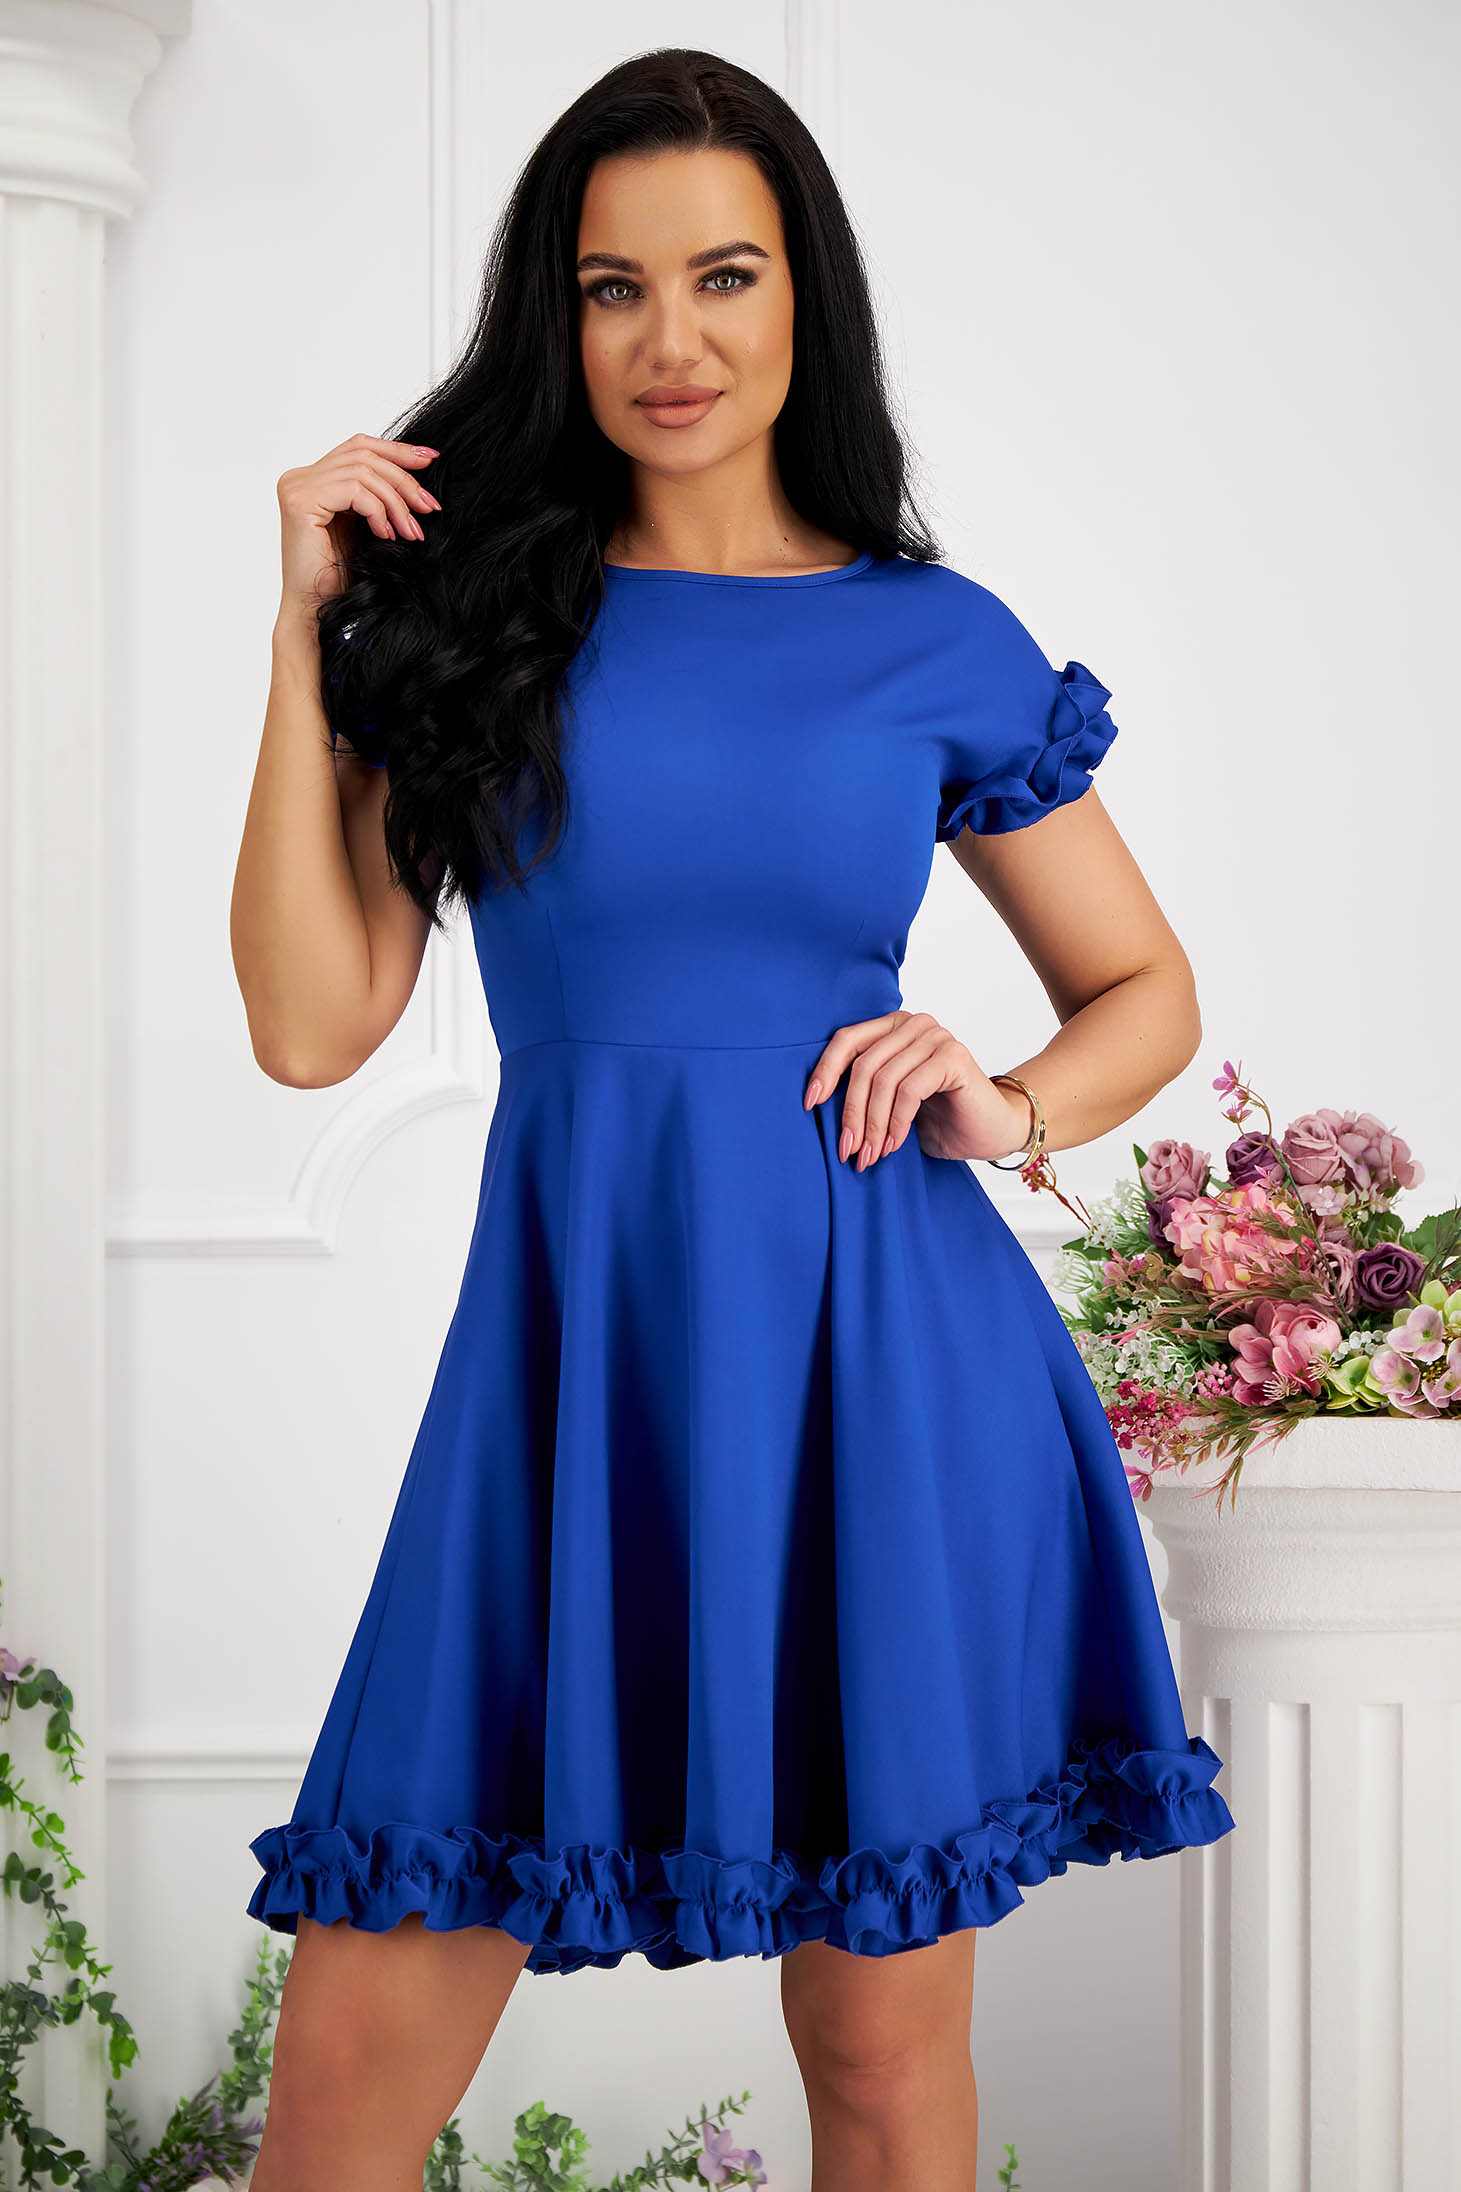 Blue Short Elastic Fabric Dress with Ruffles - StarShinerS 2 - StarShinerS.com